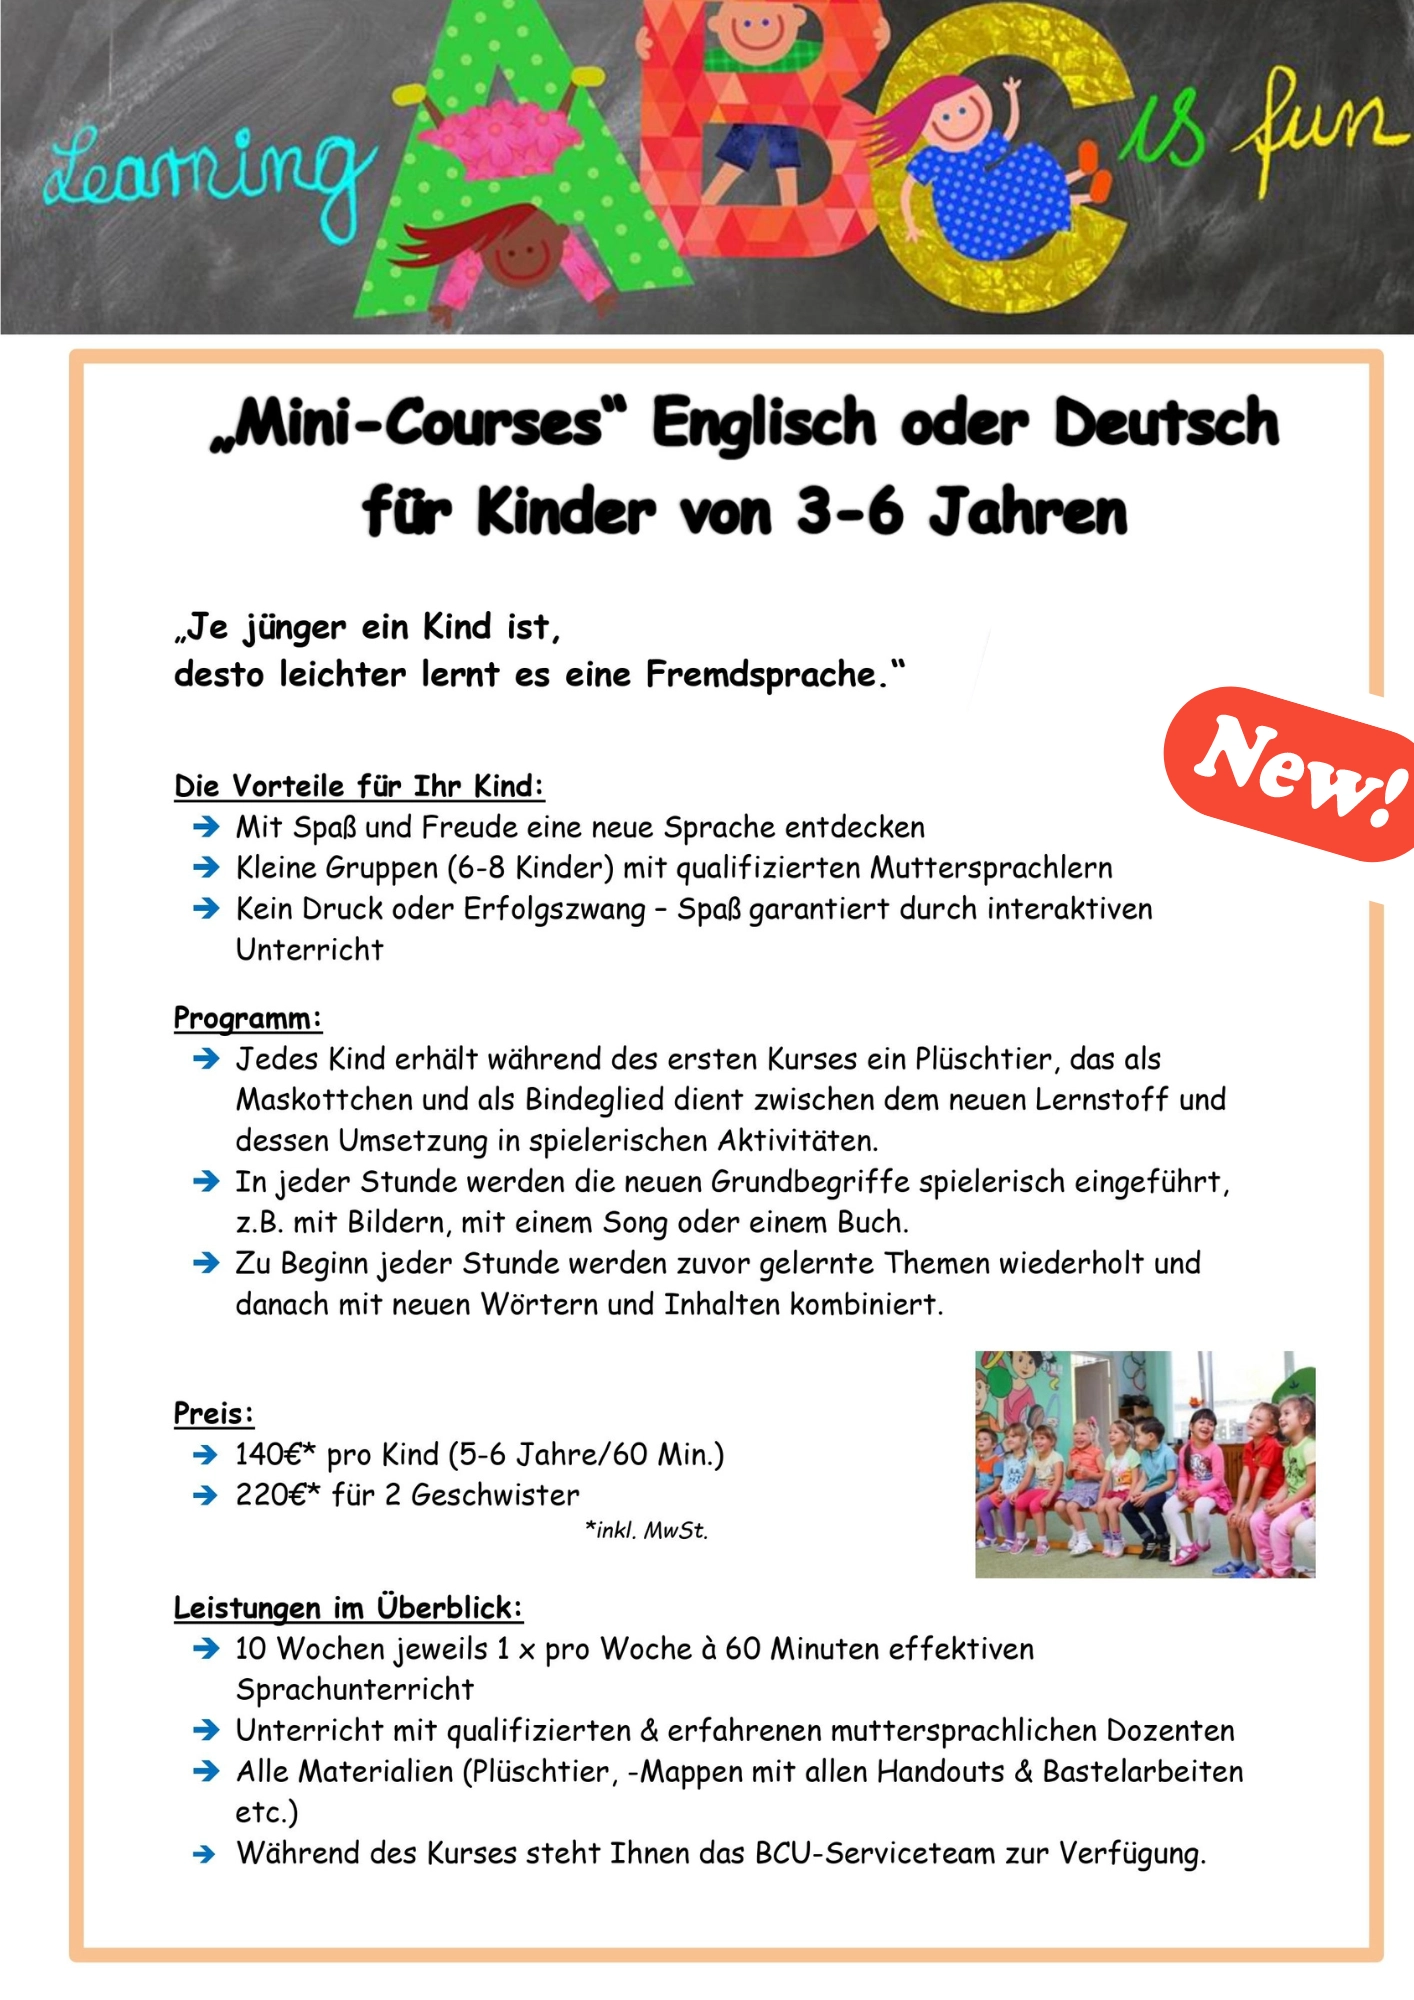 Mini-Course Englisch oder Deutsch